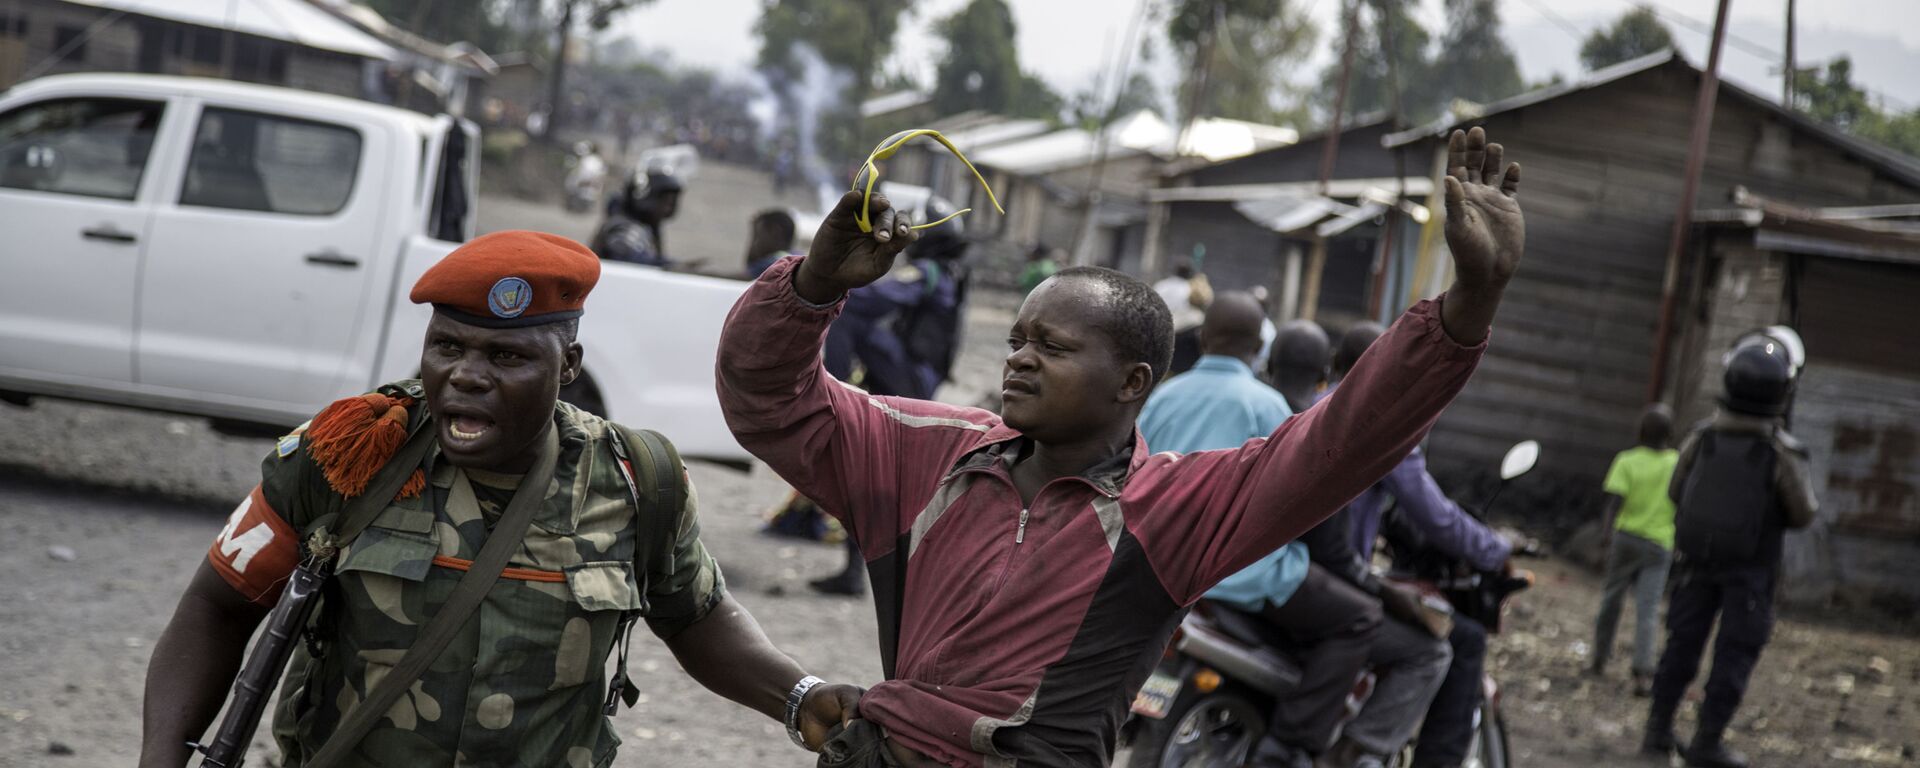 ضابط يلقي القبض على رجل حاول إغلاق الطريق بالحجارة، في حي ماجينغو في غوما، شرق جمهورية الكونغو الديمقراطية، في 19 ديسمبر/ كانون الأول عام 2016، - سبوتنيك عربي, 1920, 15.01.2023